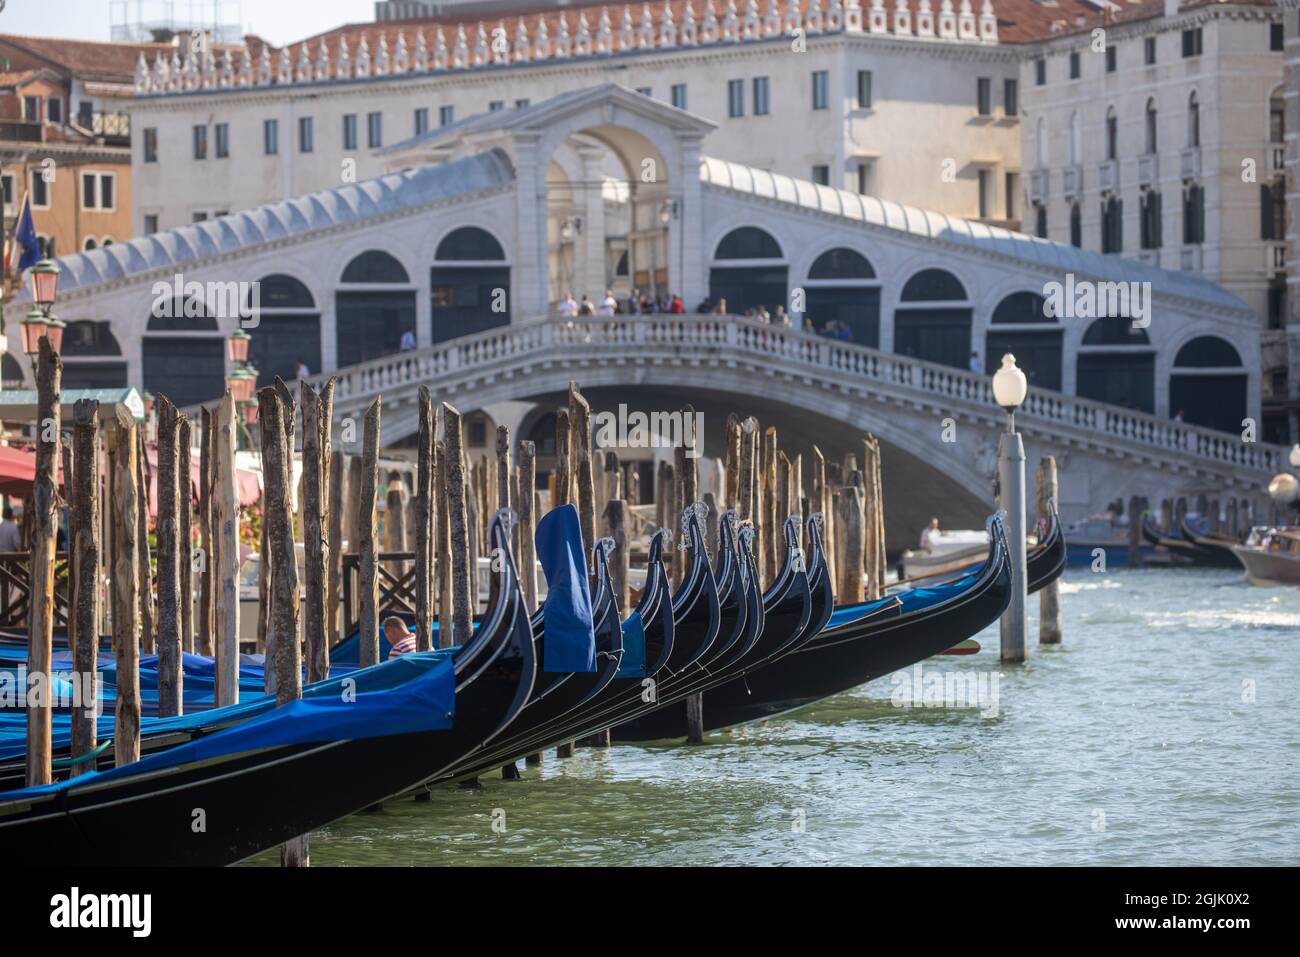 Gondole sul Canal Grande di Venezia. Il canale va dalla stazione ferroviaria di Santa Lucia alla laguna di San Marco. I turisti amano prendere le gondole. Foto Stock